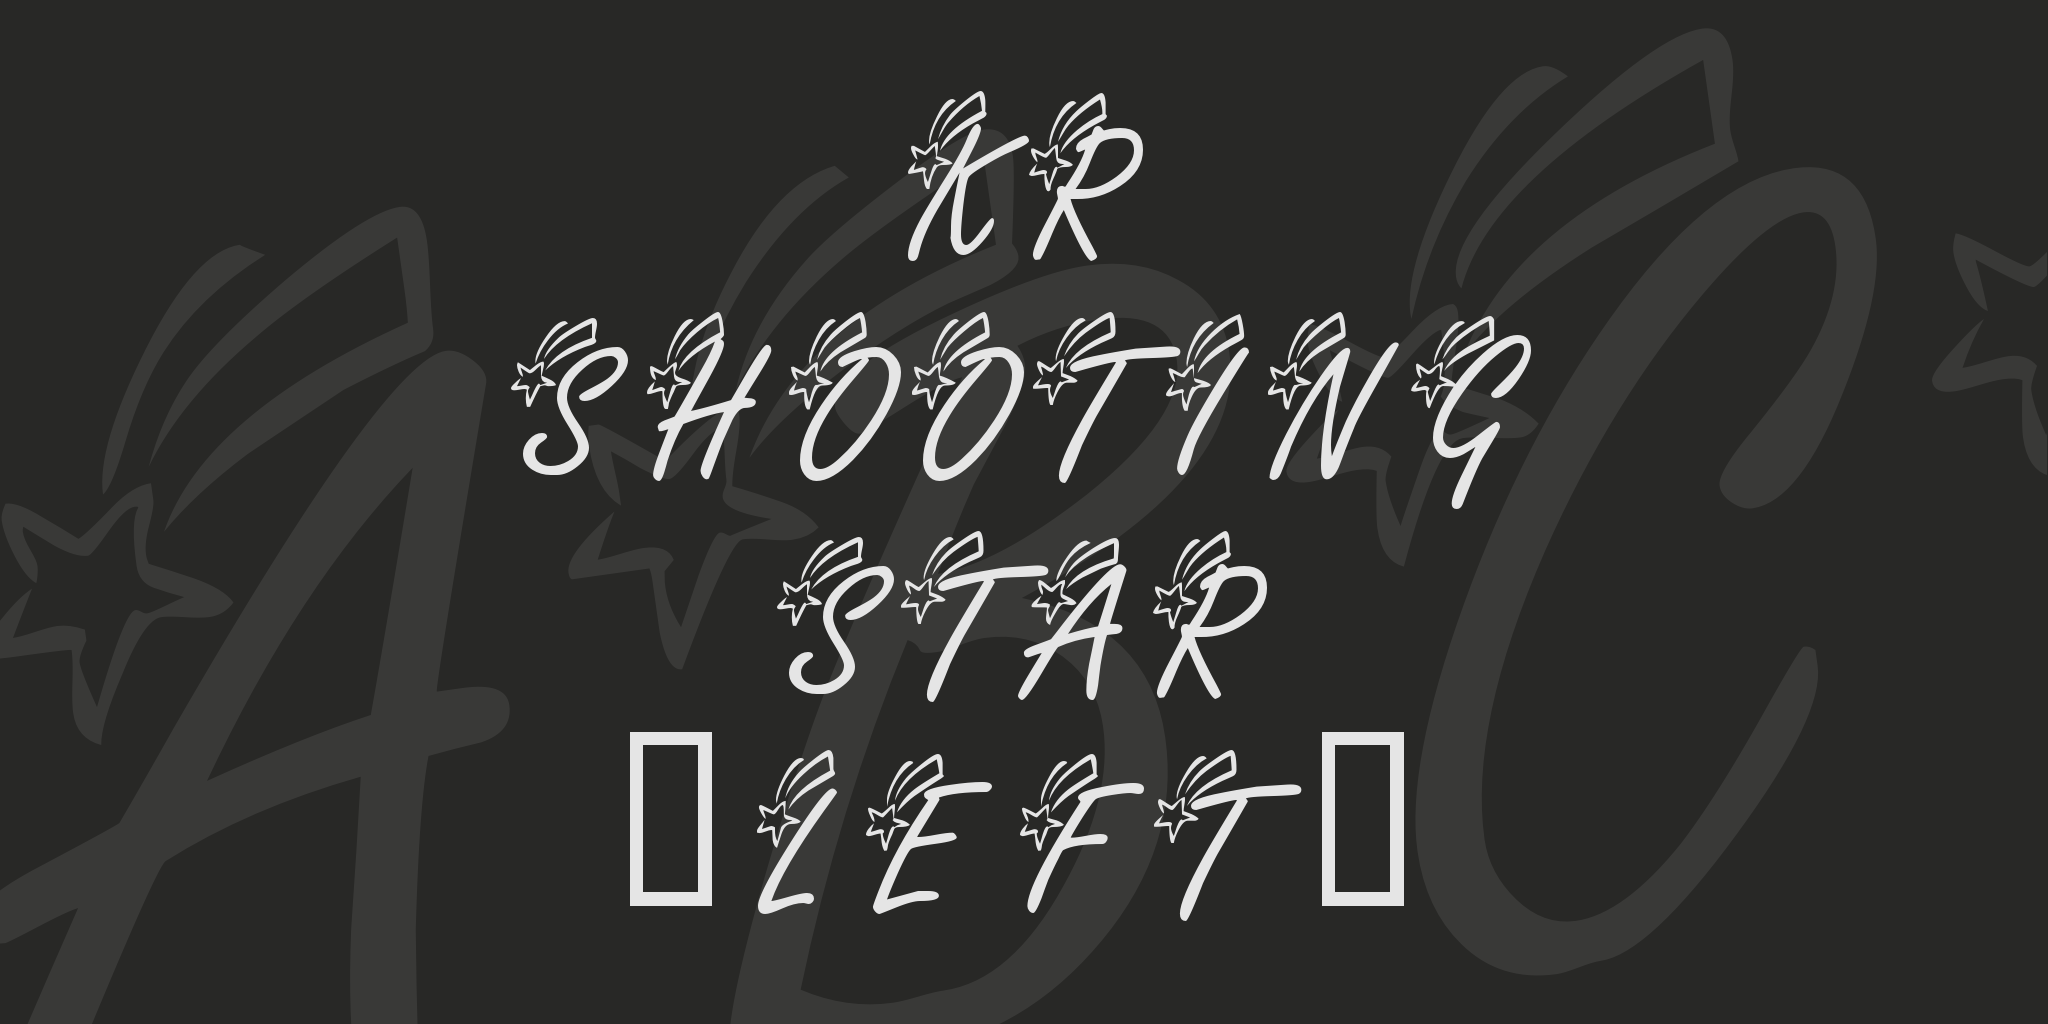 Kr Shooting Star Left